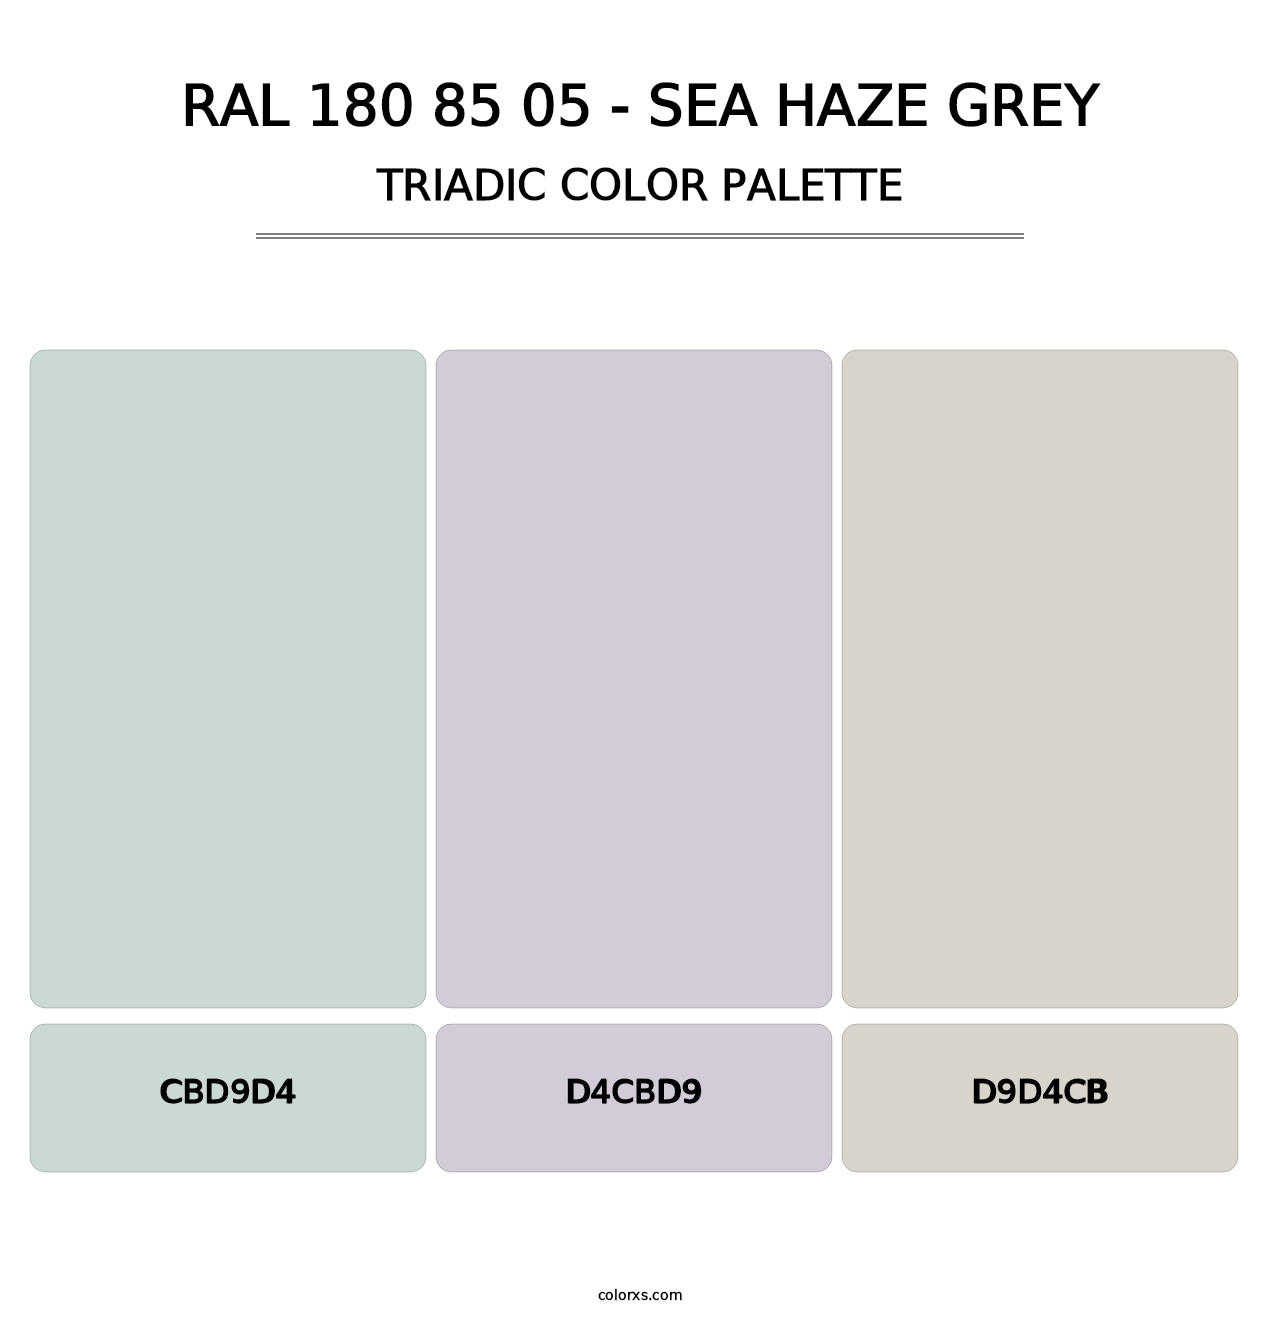 RAL 180 85 05 - Sea Haze Grey - Triadic Color Palette